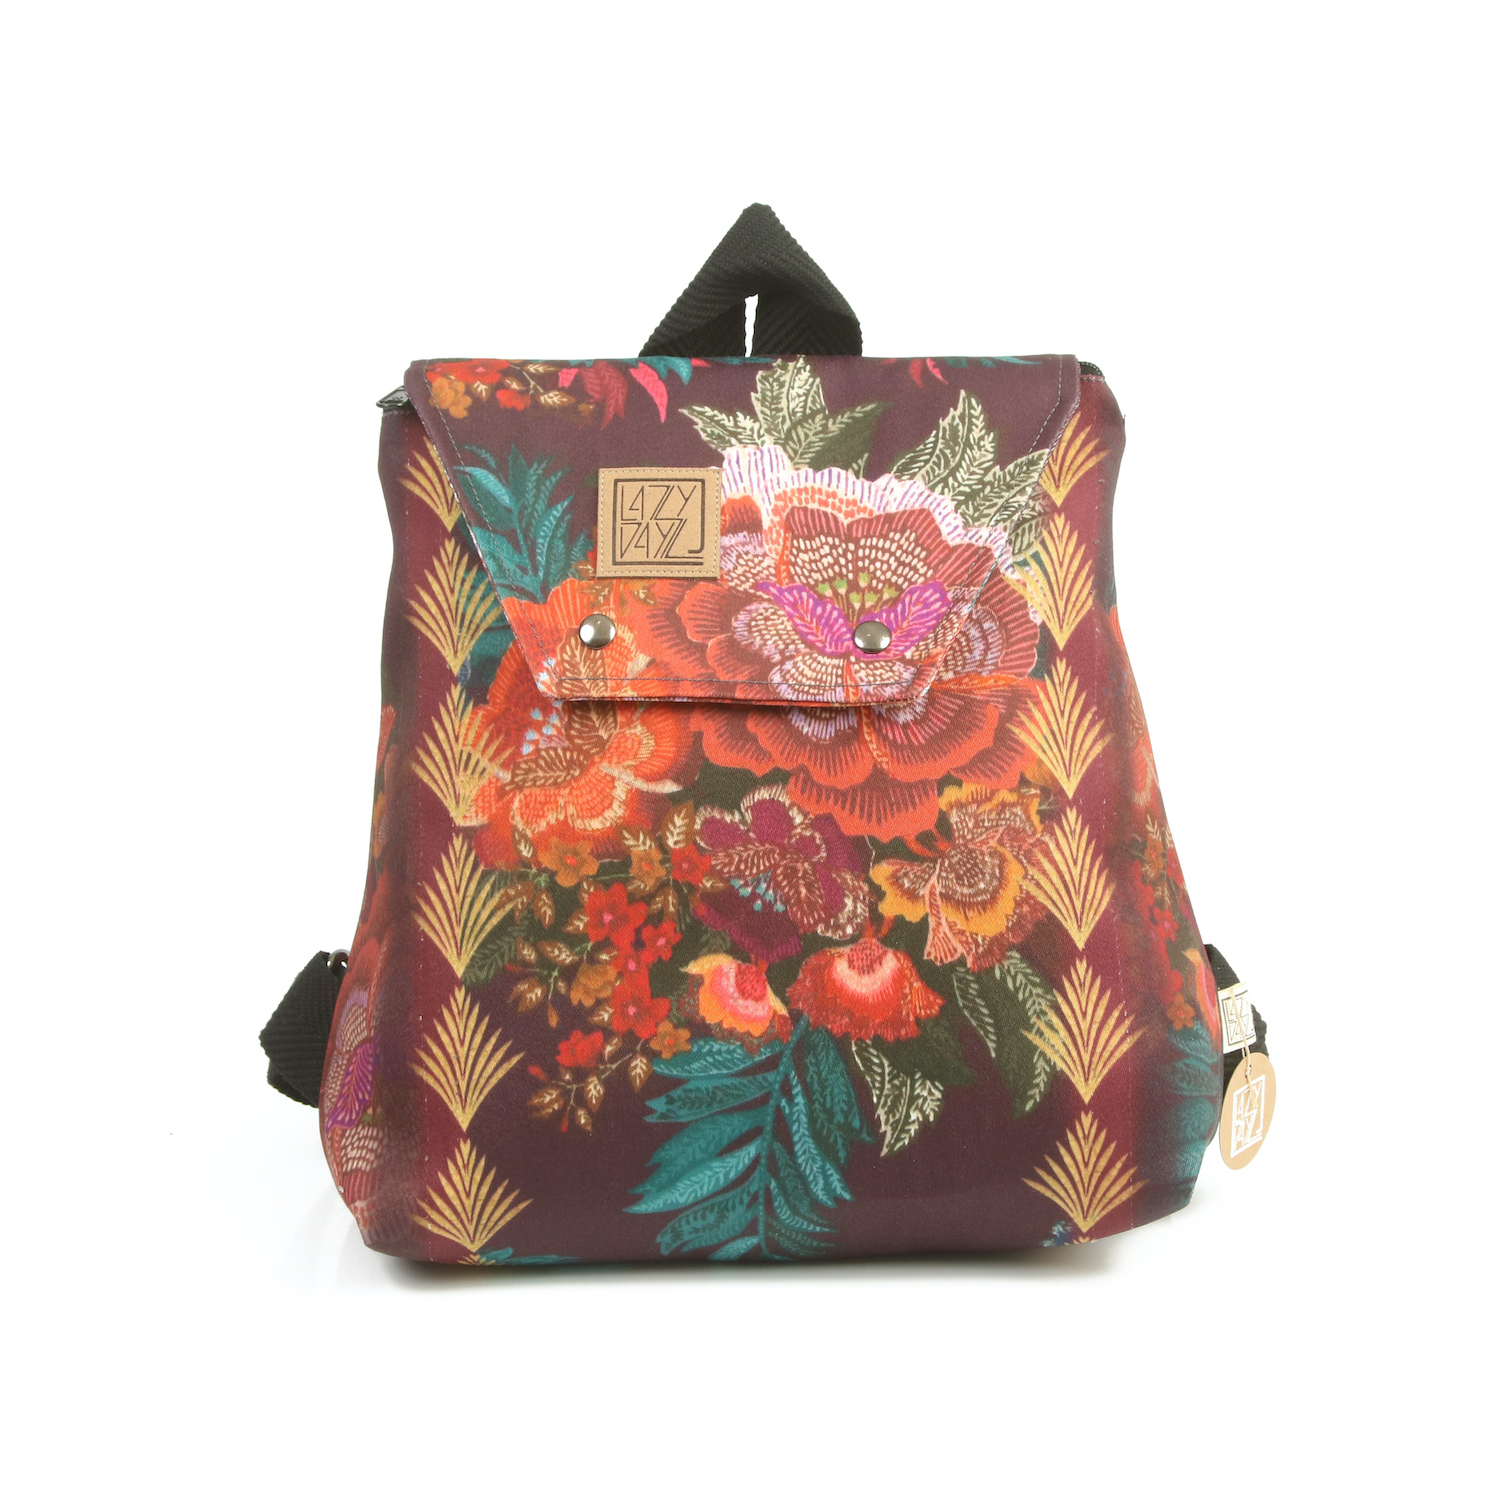 LazyDayz Designs Backpack γυναικείος σάκος πλάτης χειροποίητος bb0303